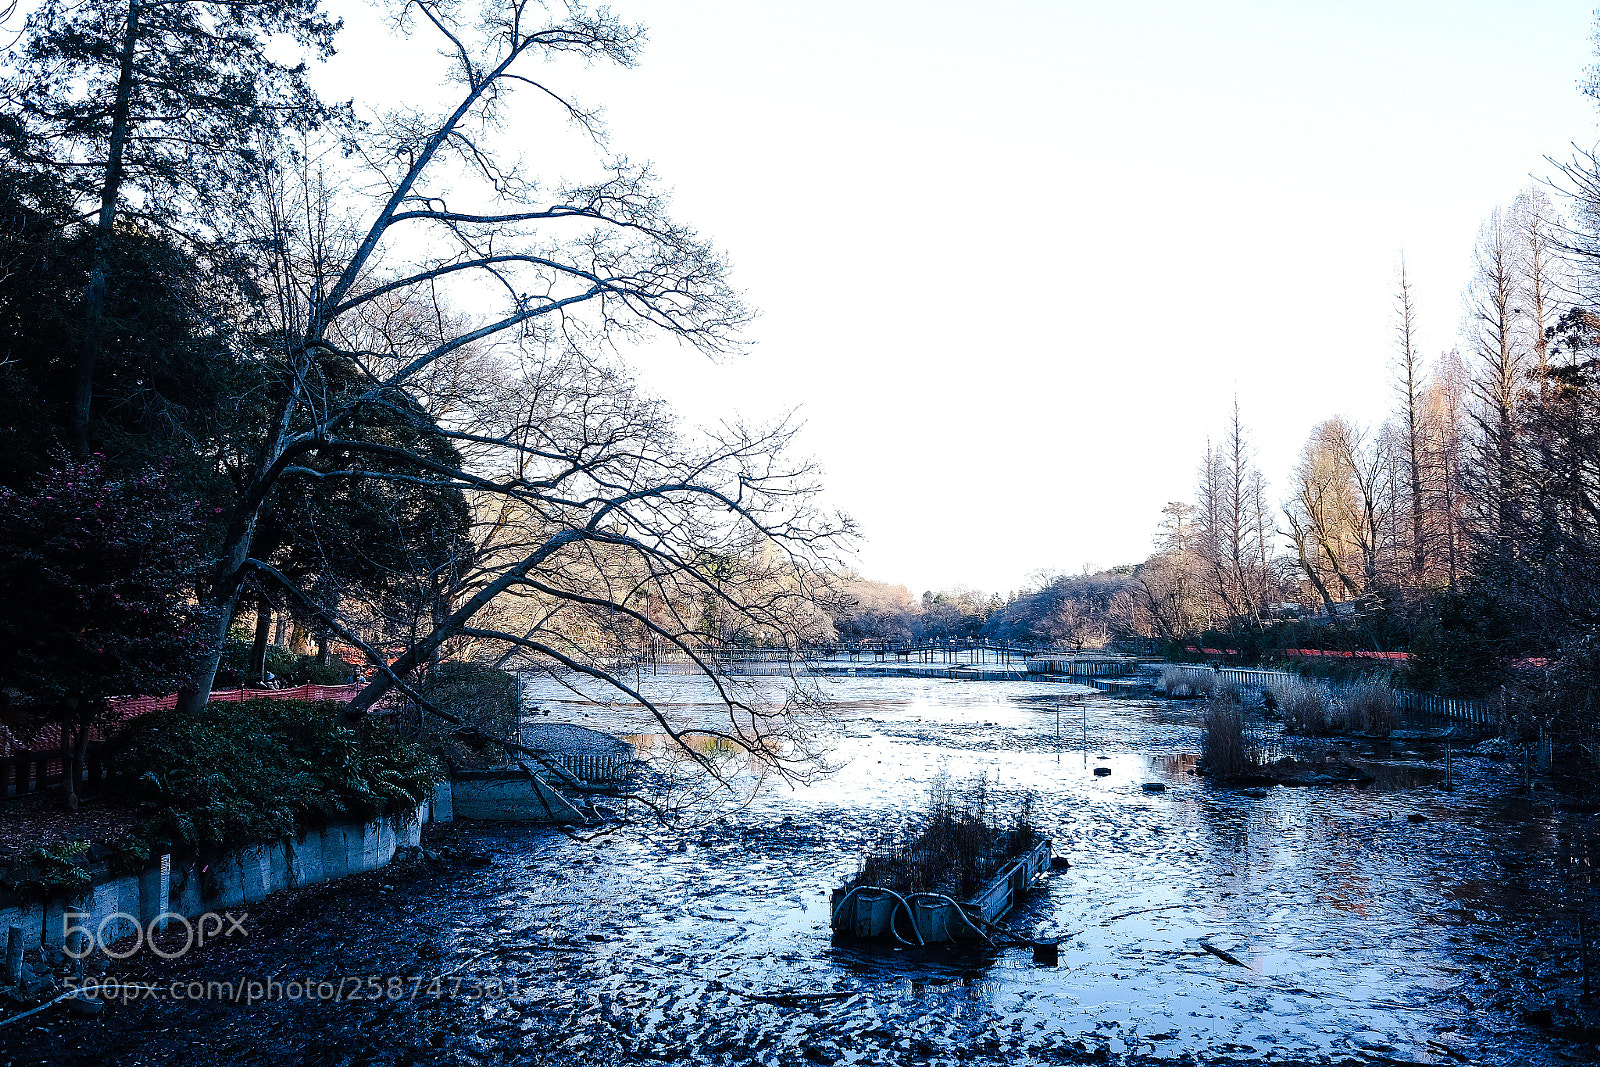 Fujifilm X70 sample photo. Winter in the inokashira photography